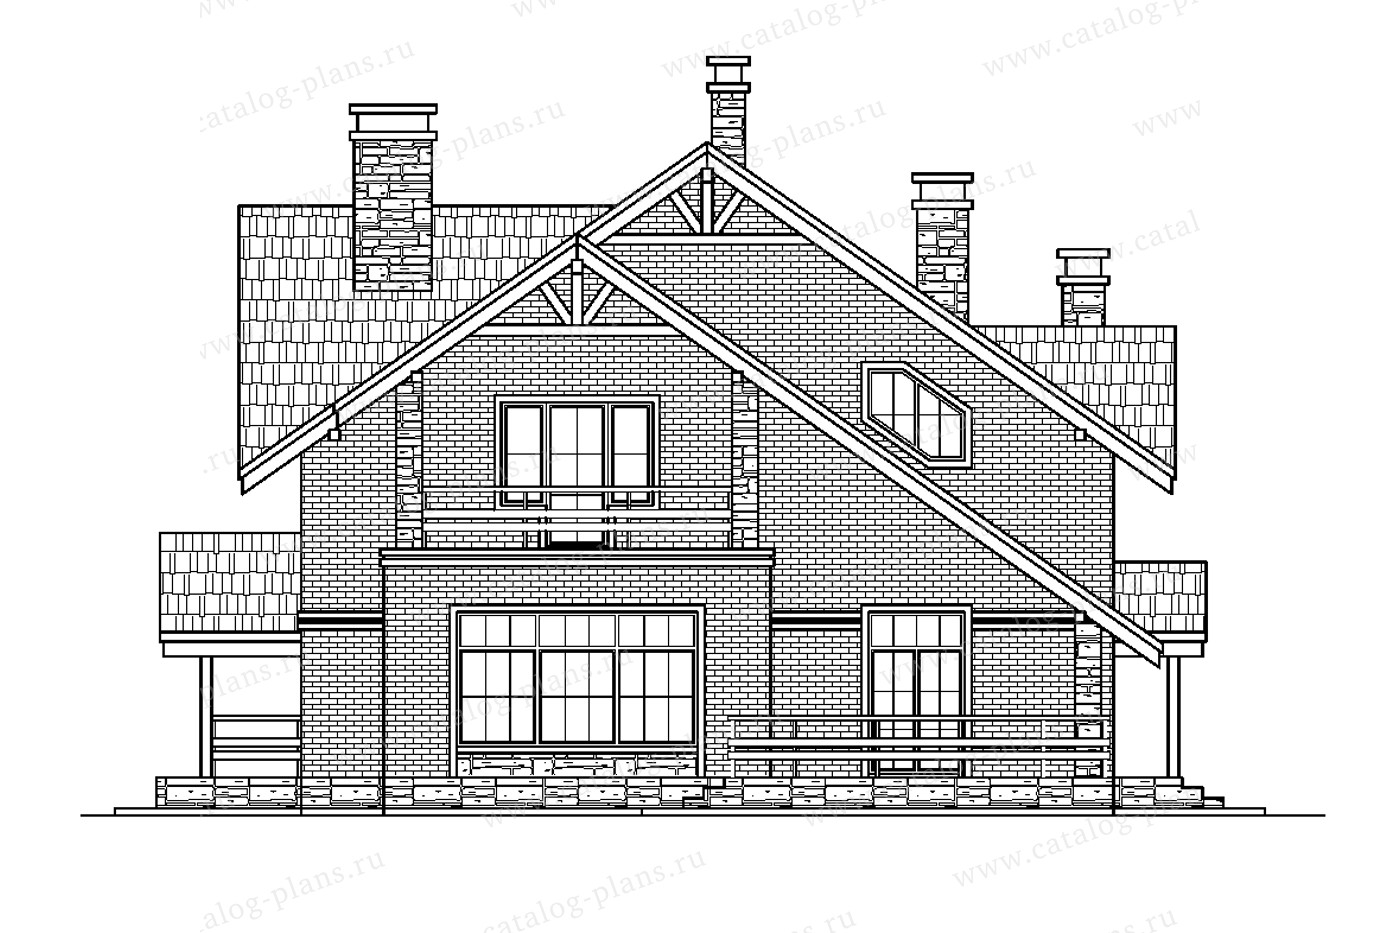 Проект 58-22CAK1L, жилой дом, материал - поризованный керамический блок 380, количество этажей - 2, архитектурный стиль - скандинавский, фундамент - монолитный ленточный ж/б